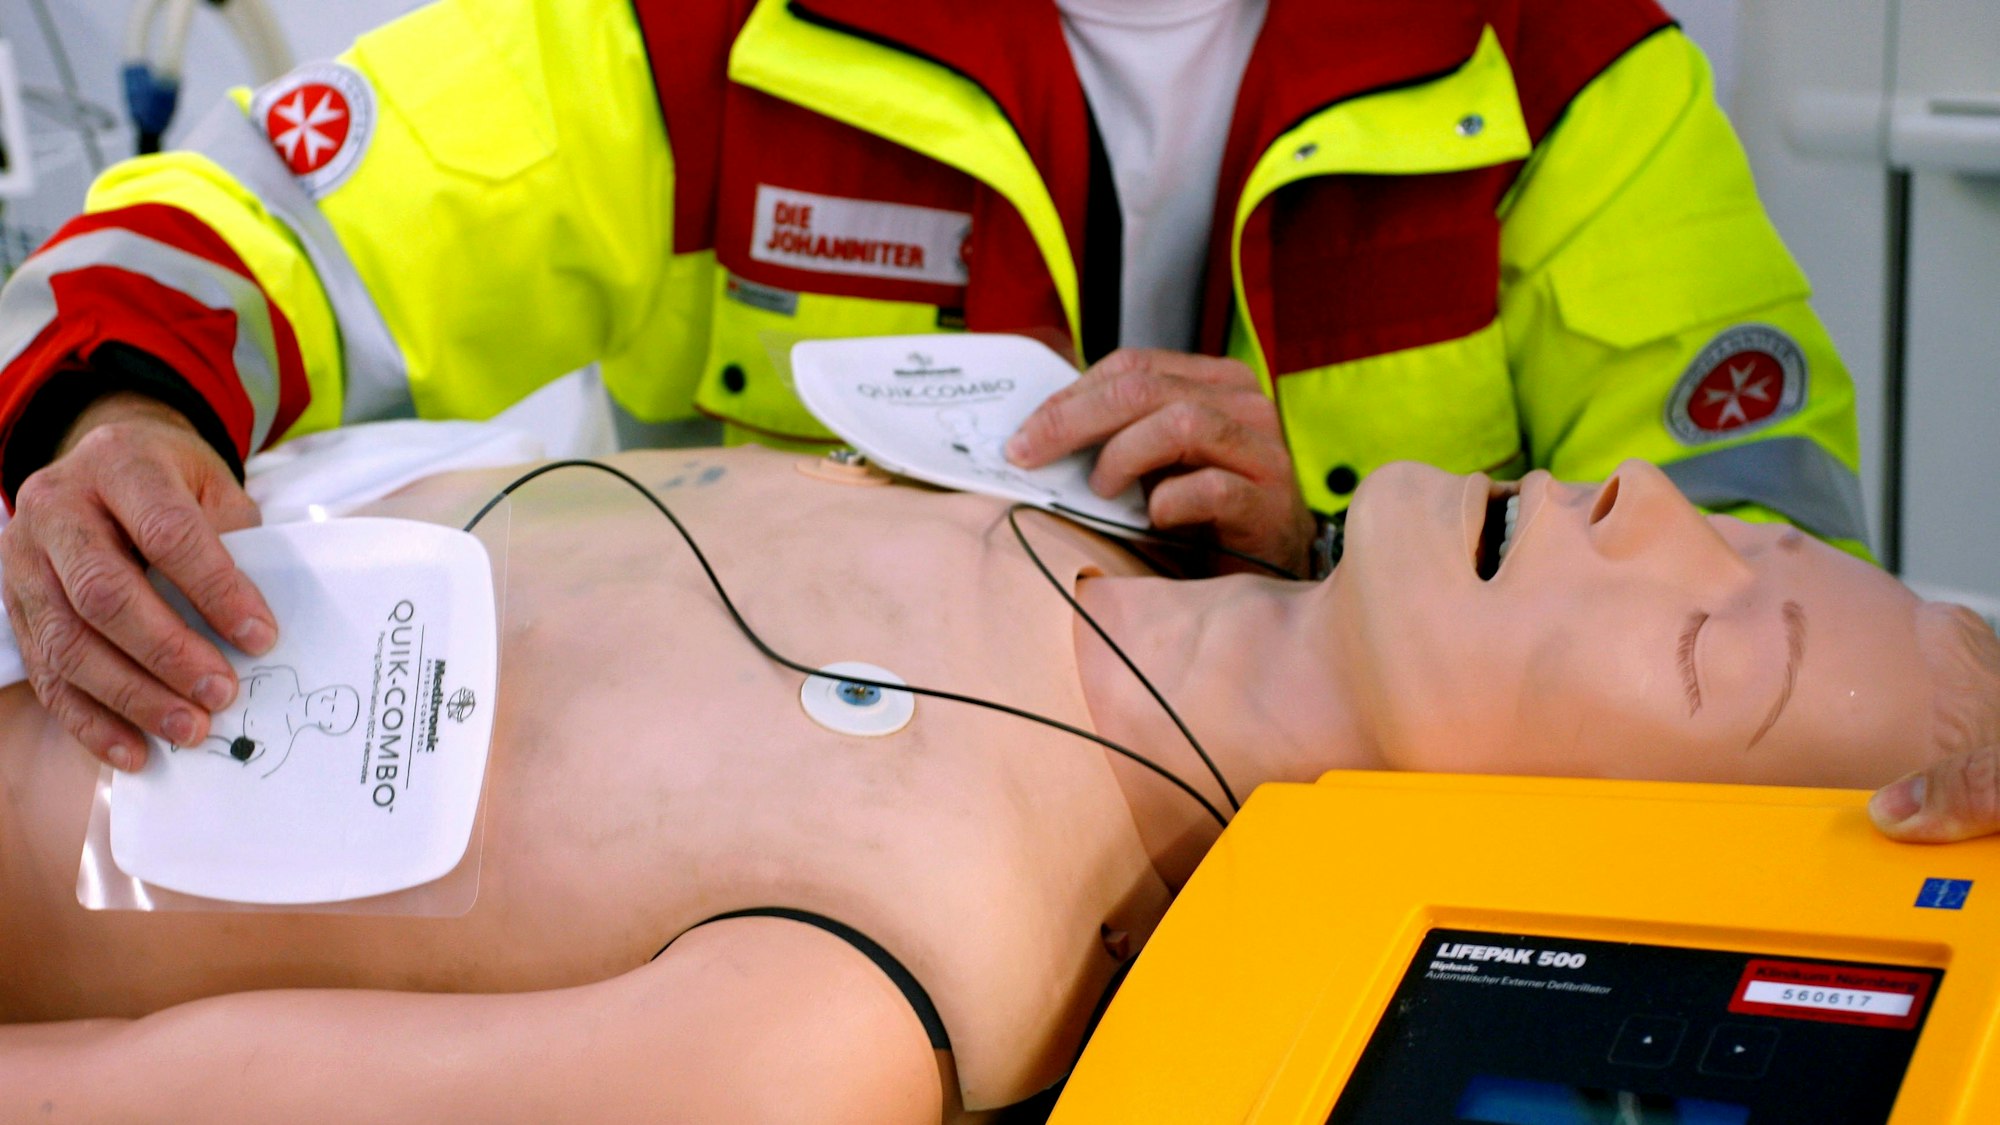 Ein Rettungssanitäter präsentiert einen Defibrillator an einer Puppe.